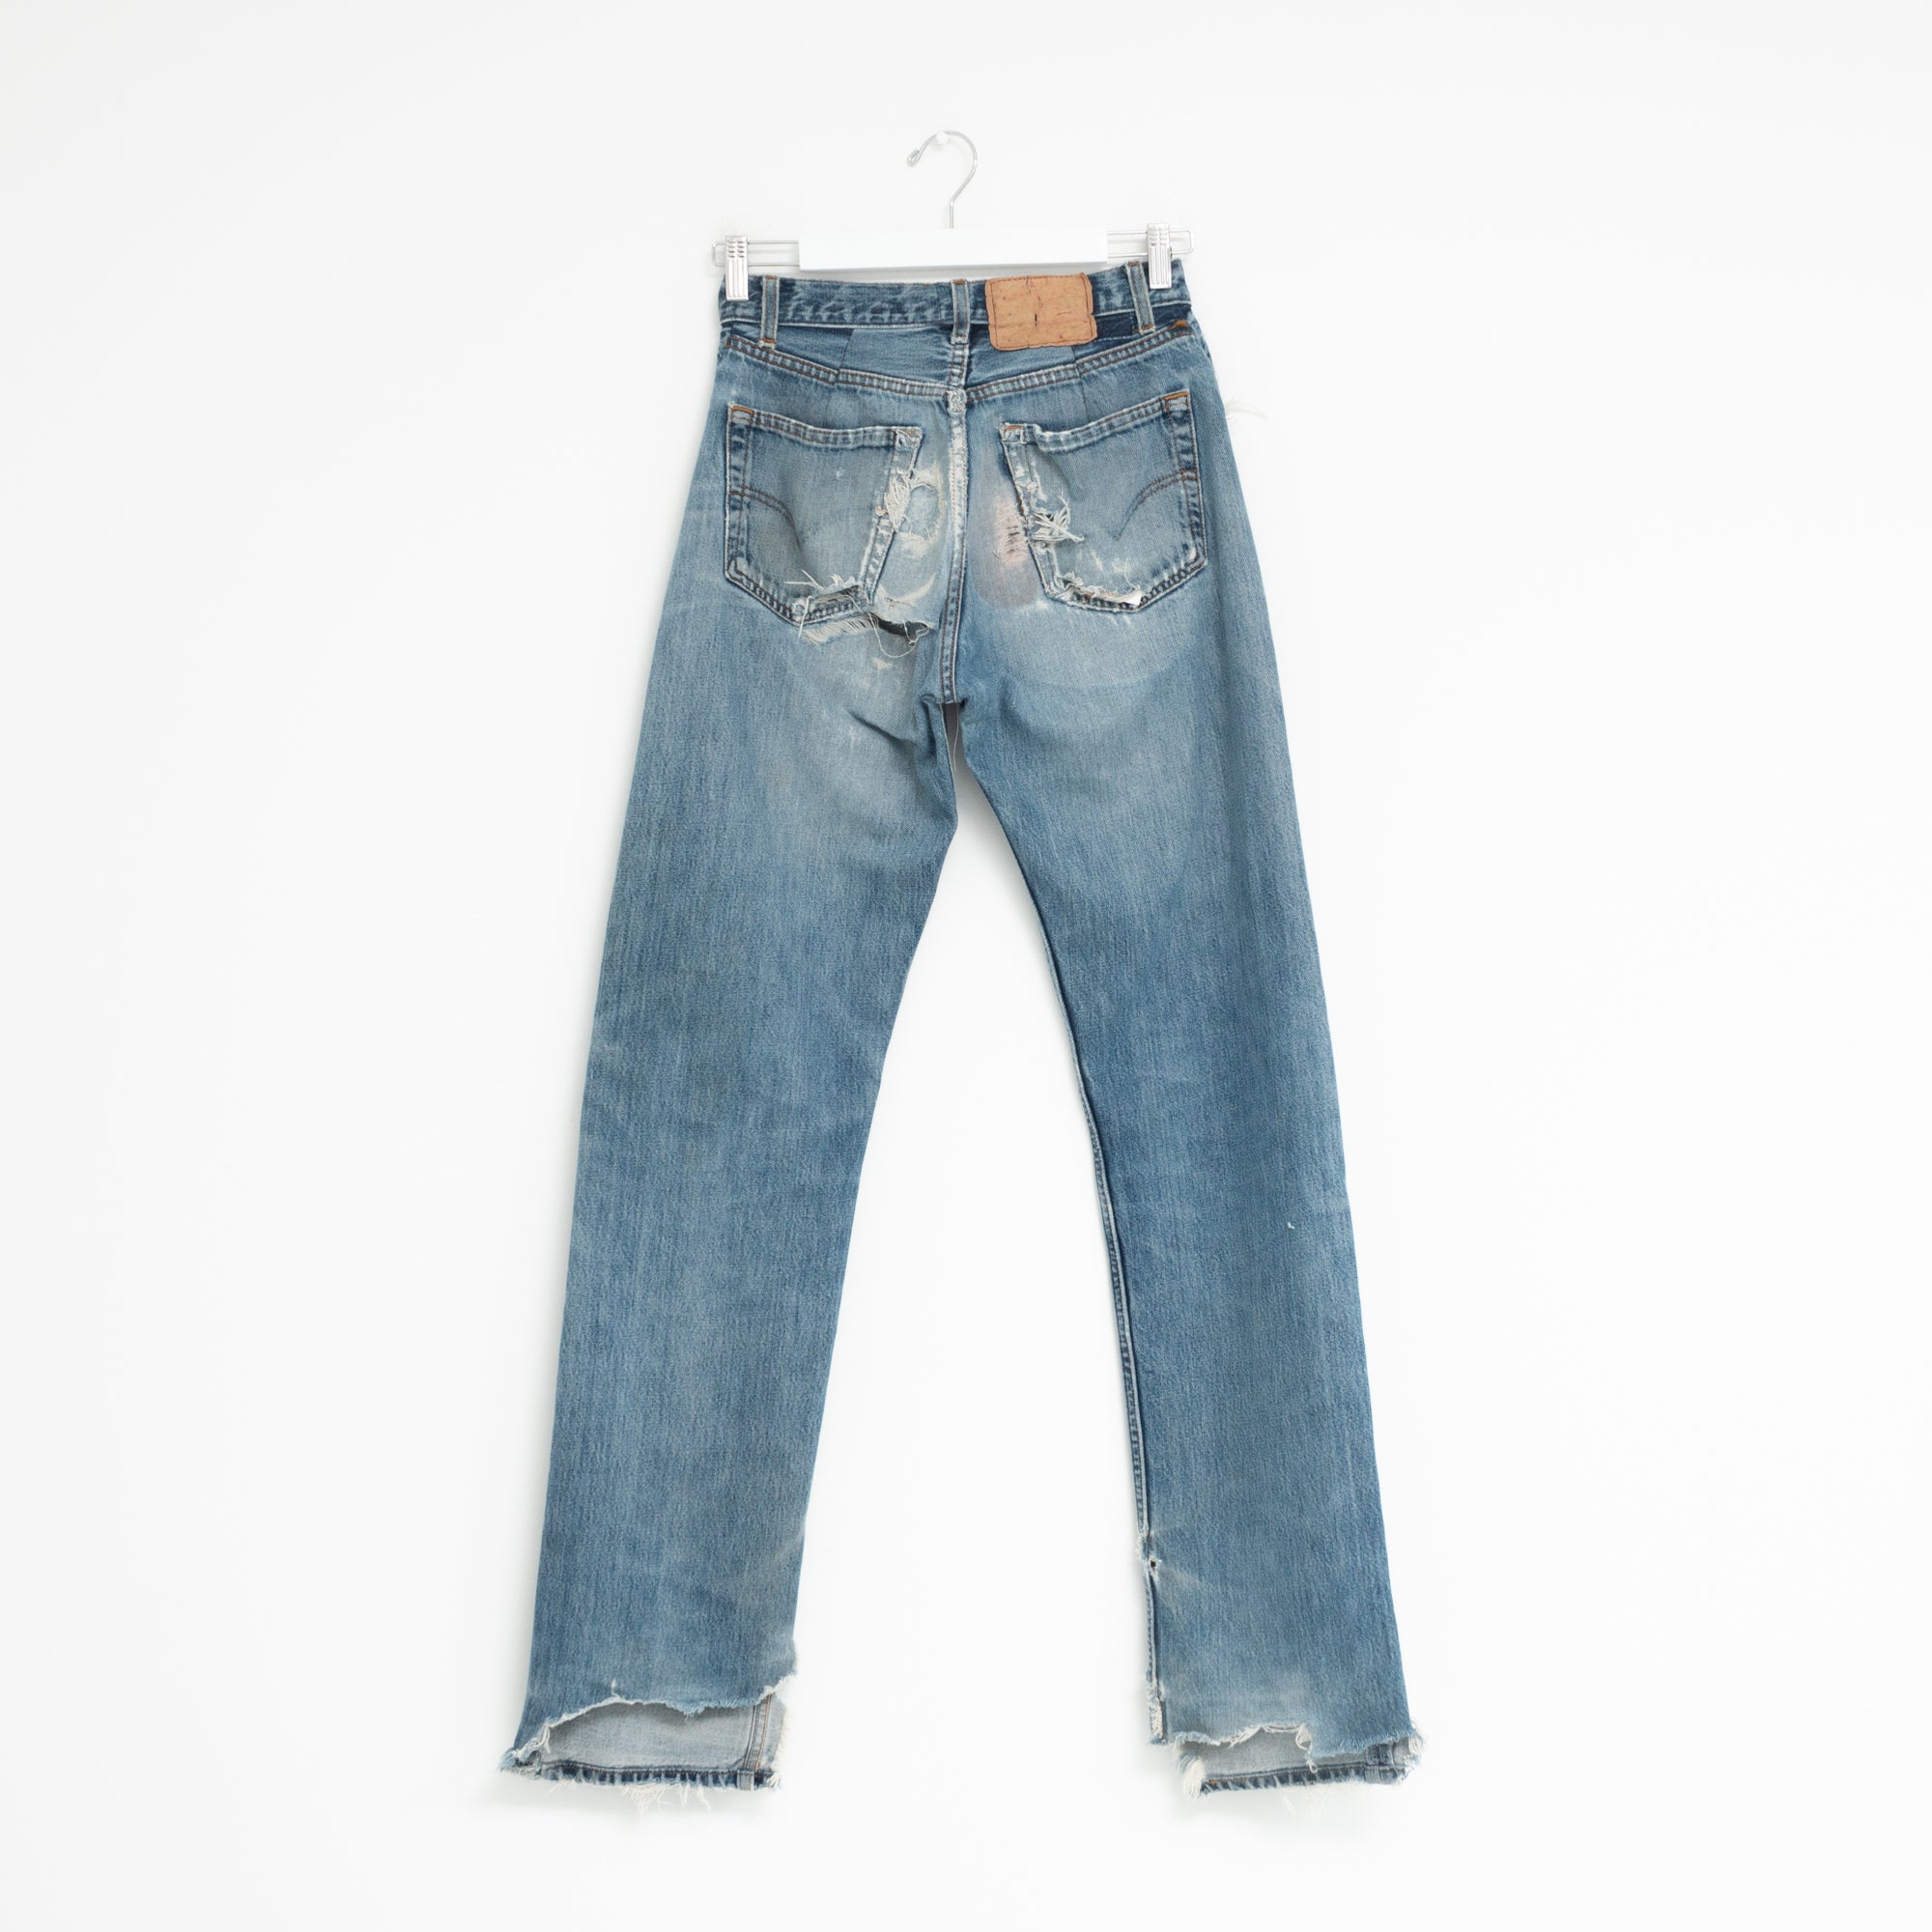 "DISTRESSED" Jeans W28 L35